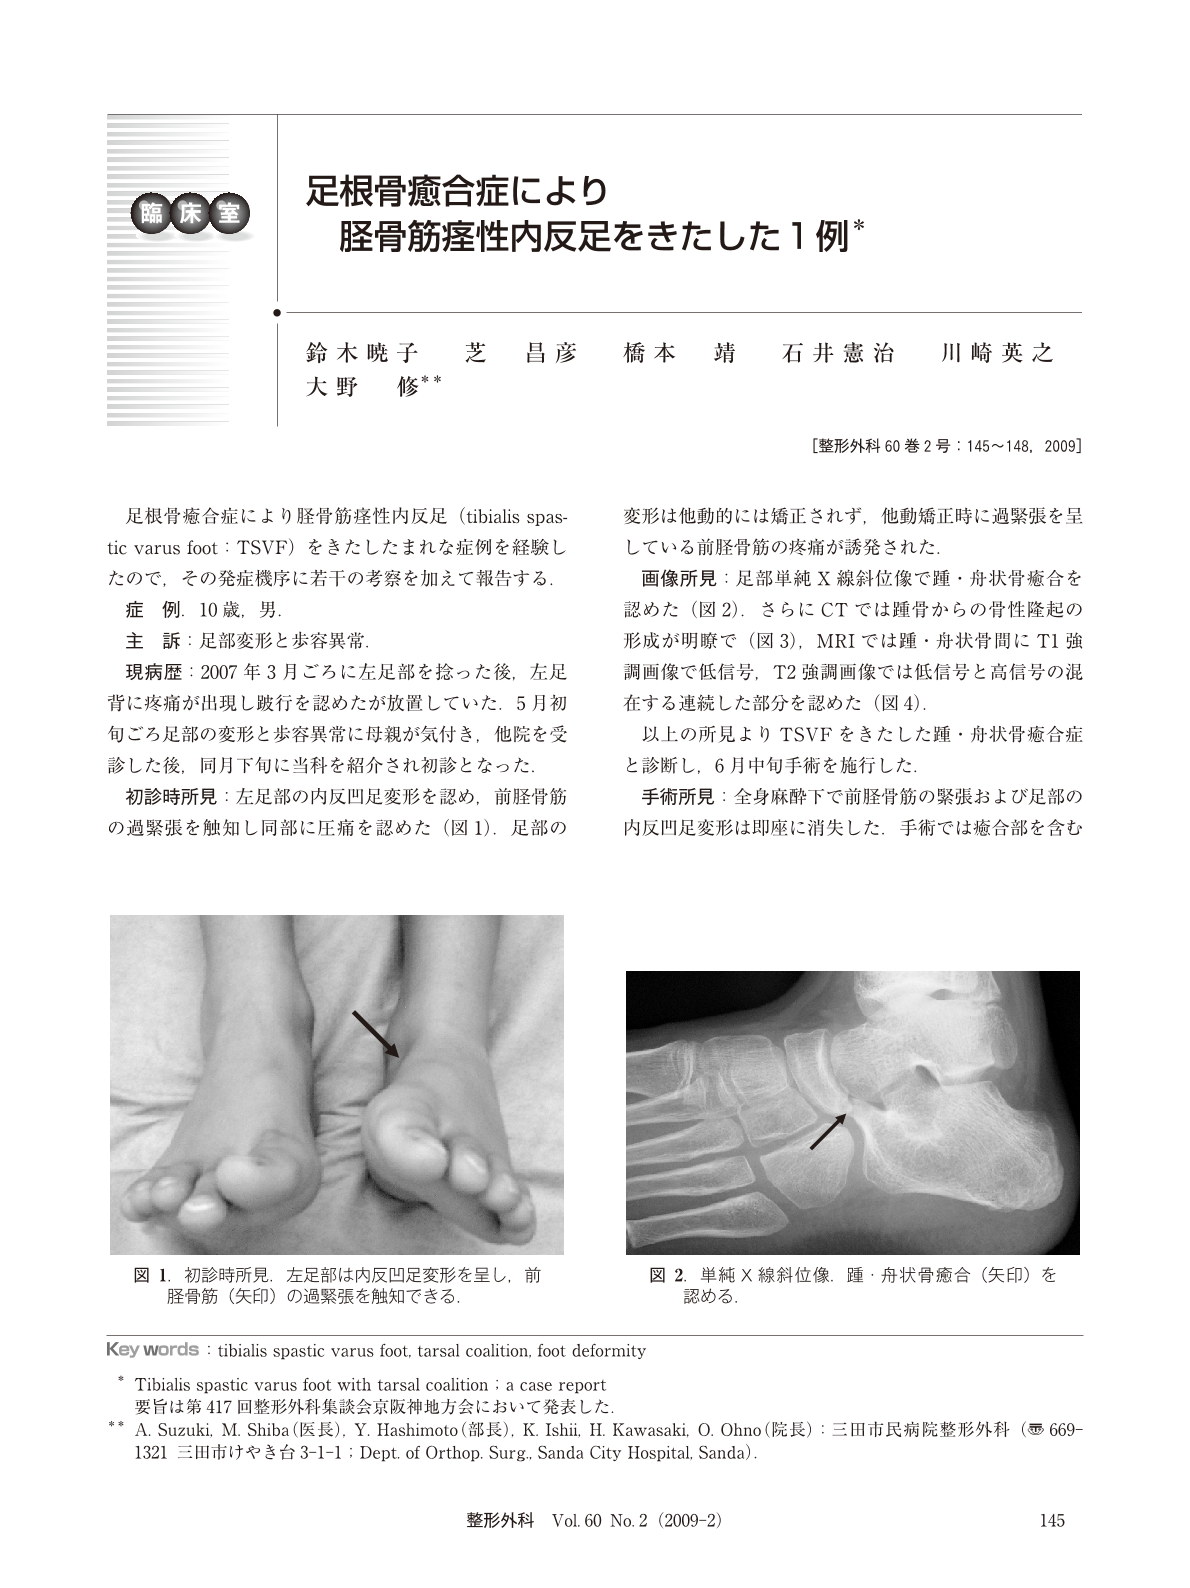 足根骨癒合症により脛骨筋痙性内反足をきたした1例 臨床雑誌整形外科 60巻2号 医書 Jp